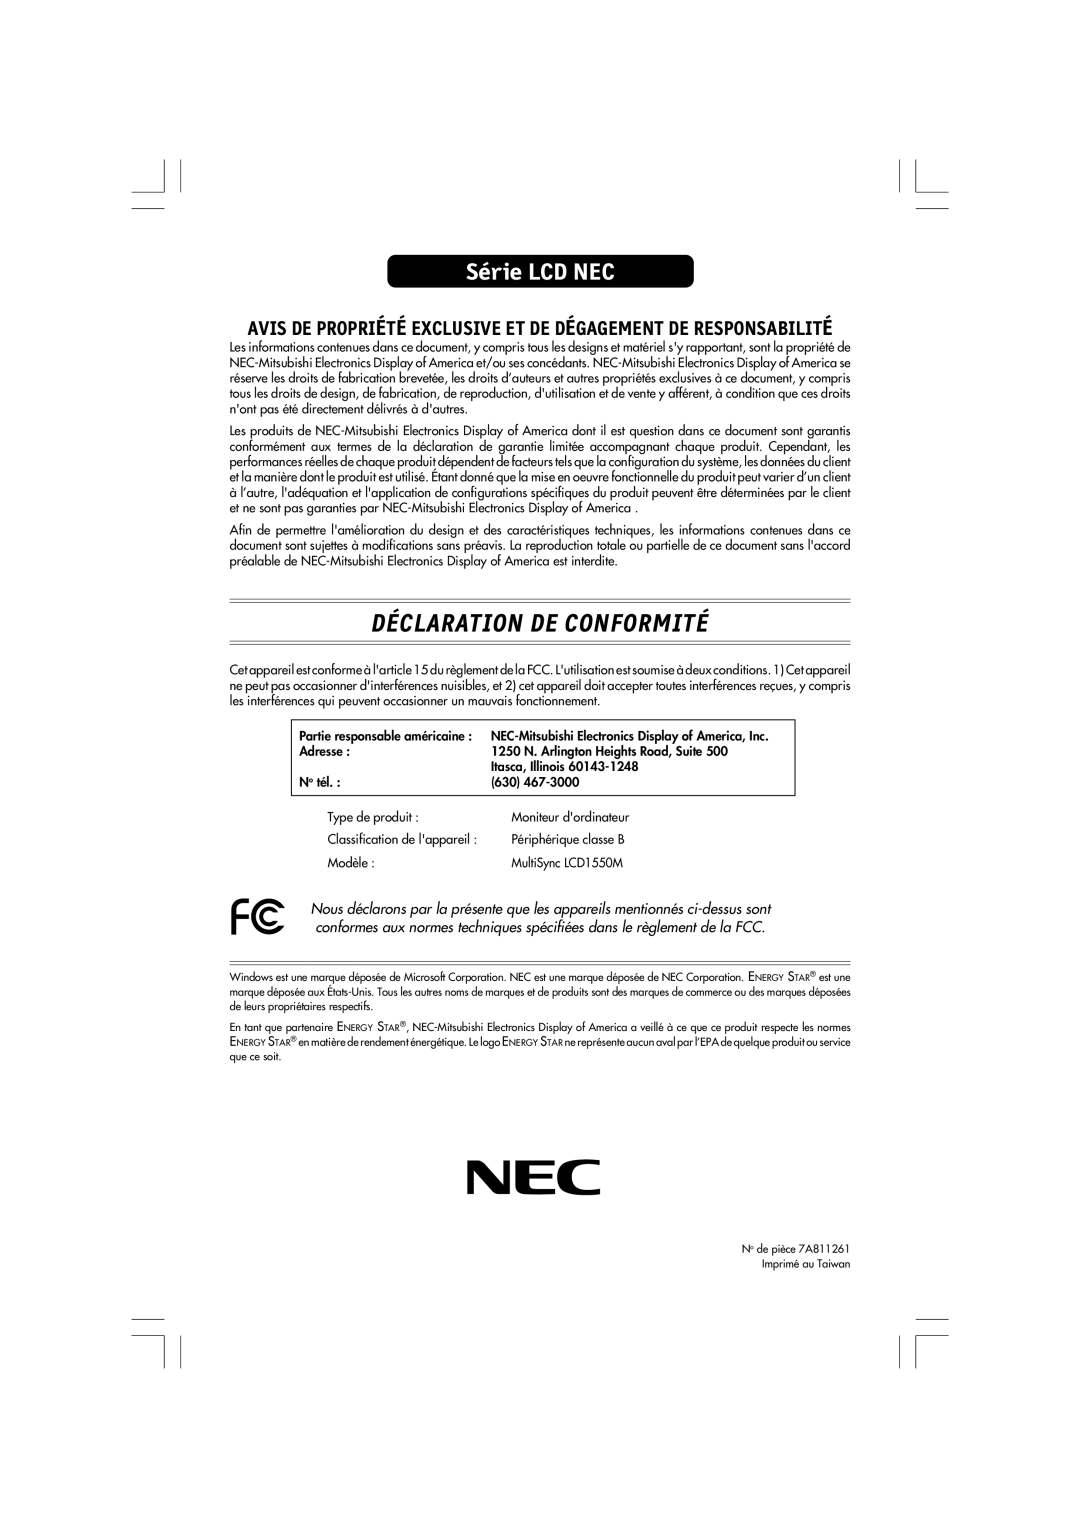 NEC LA-15R03-BK Déclaration De Conformité, Série LCD NEC, Avis De Propriété Exclusive Et De Dégagement De Responsabilité 